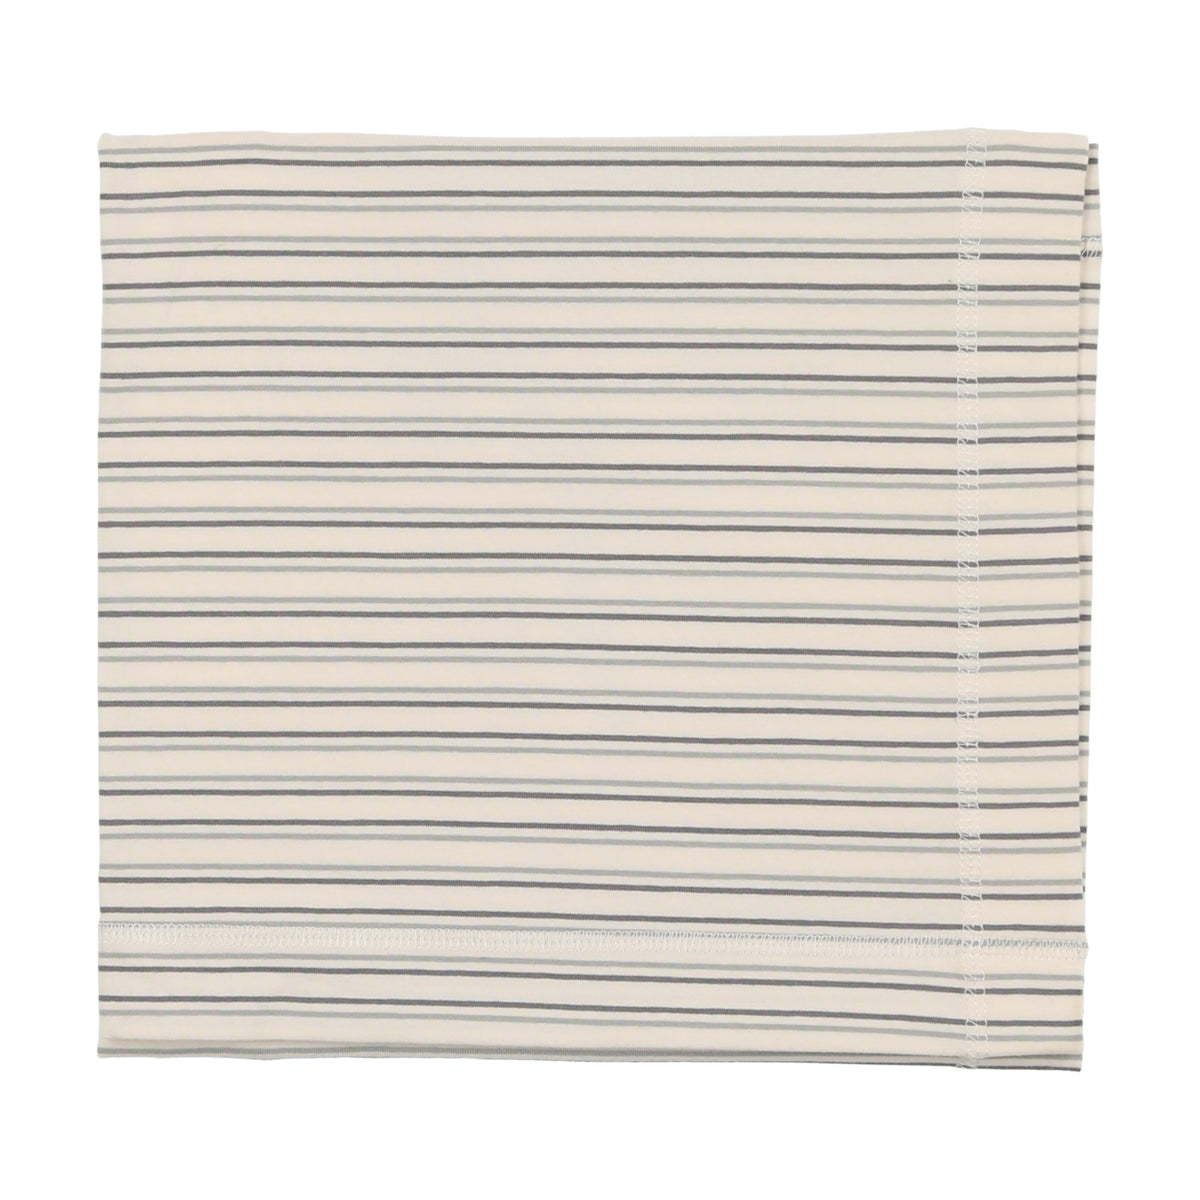 Signature Stripe Blanket